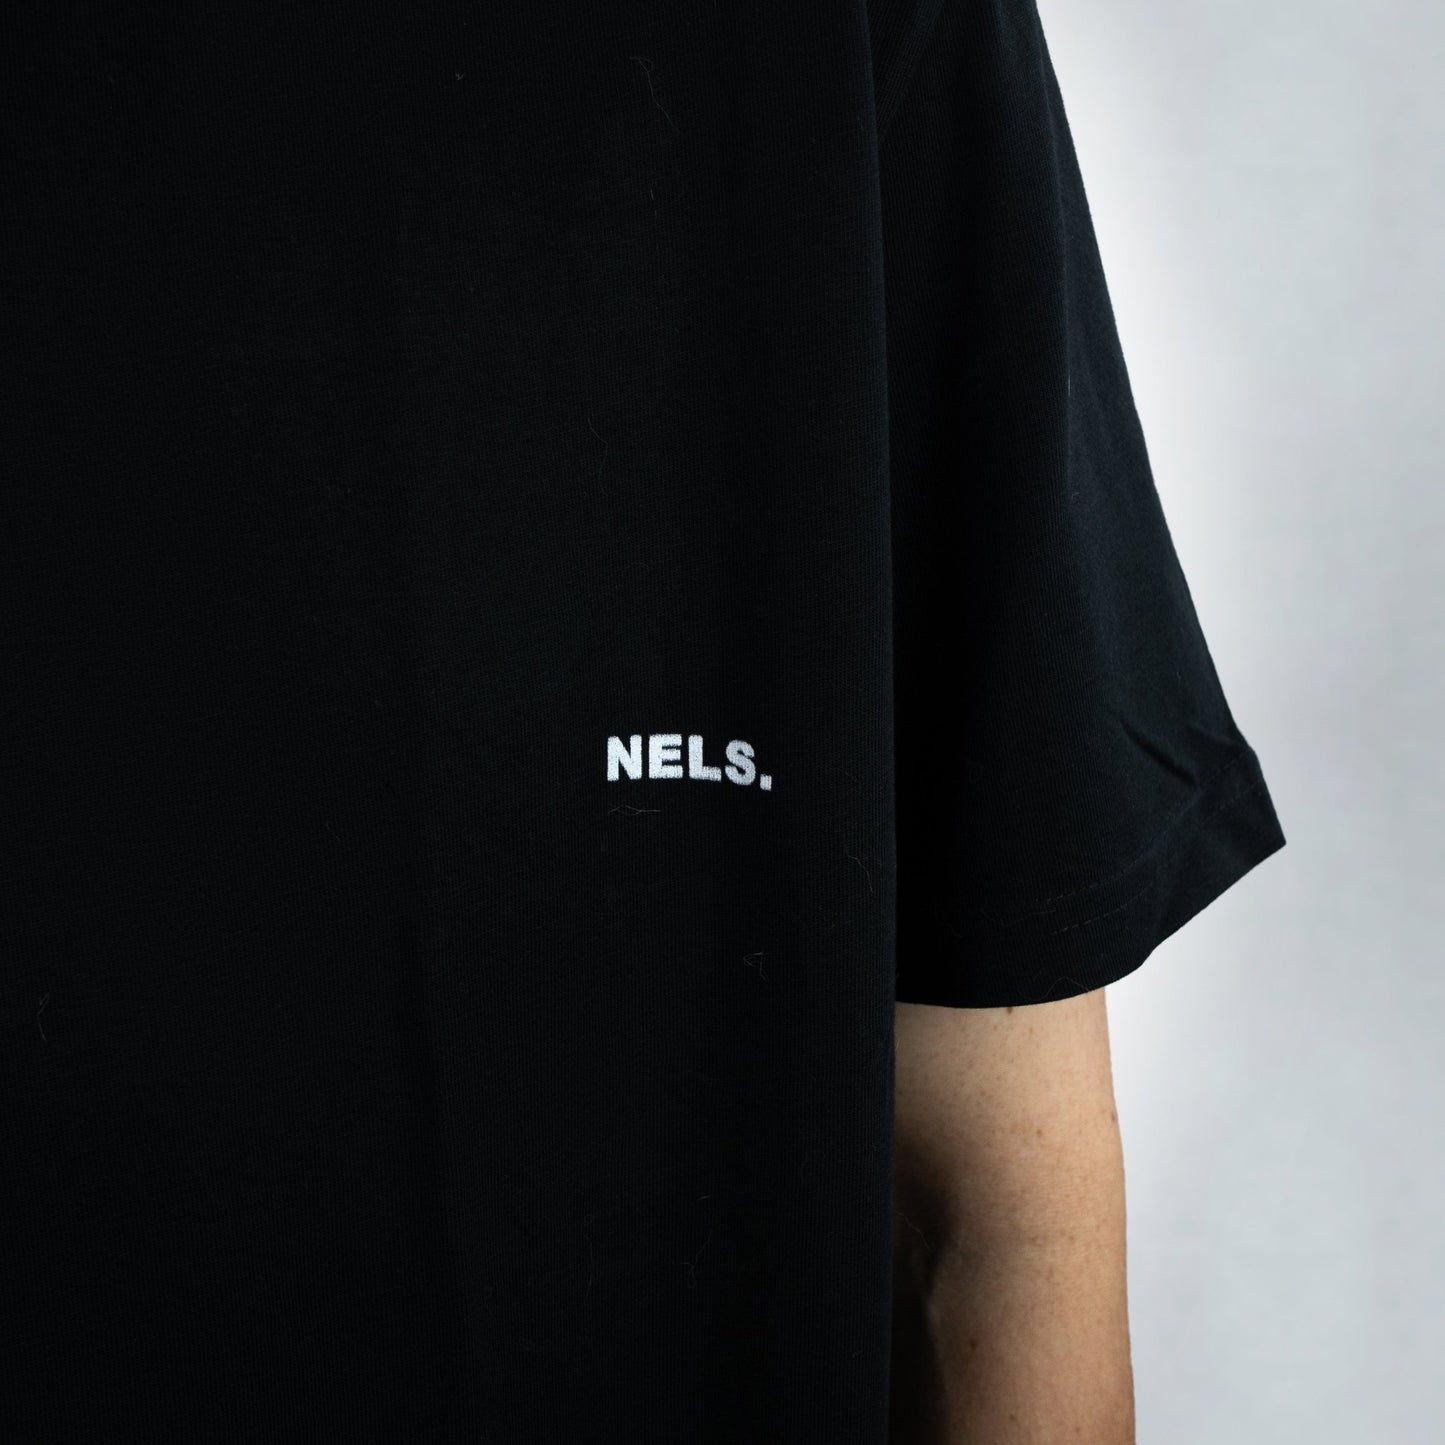 T-shirt NELS. 'Never Ending Life Style' - NELS.